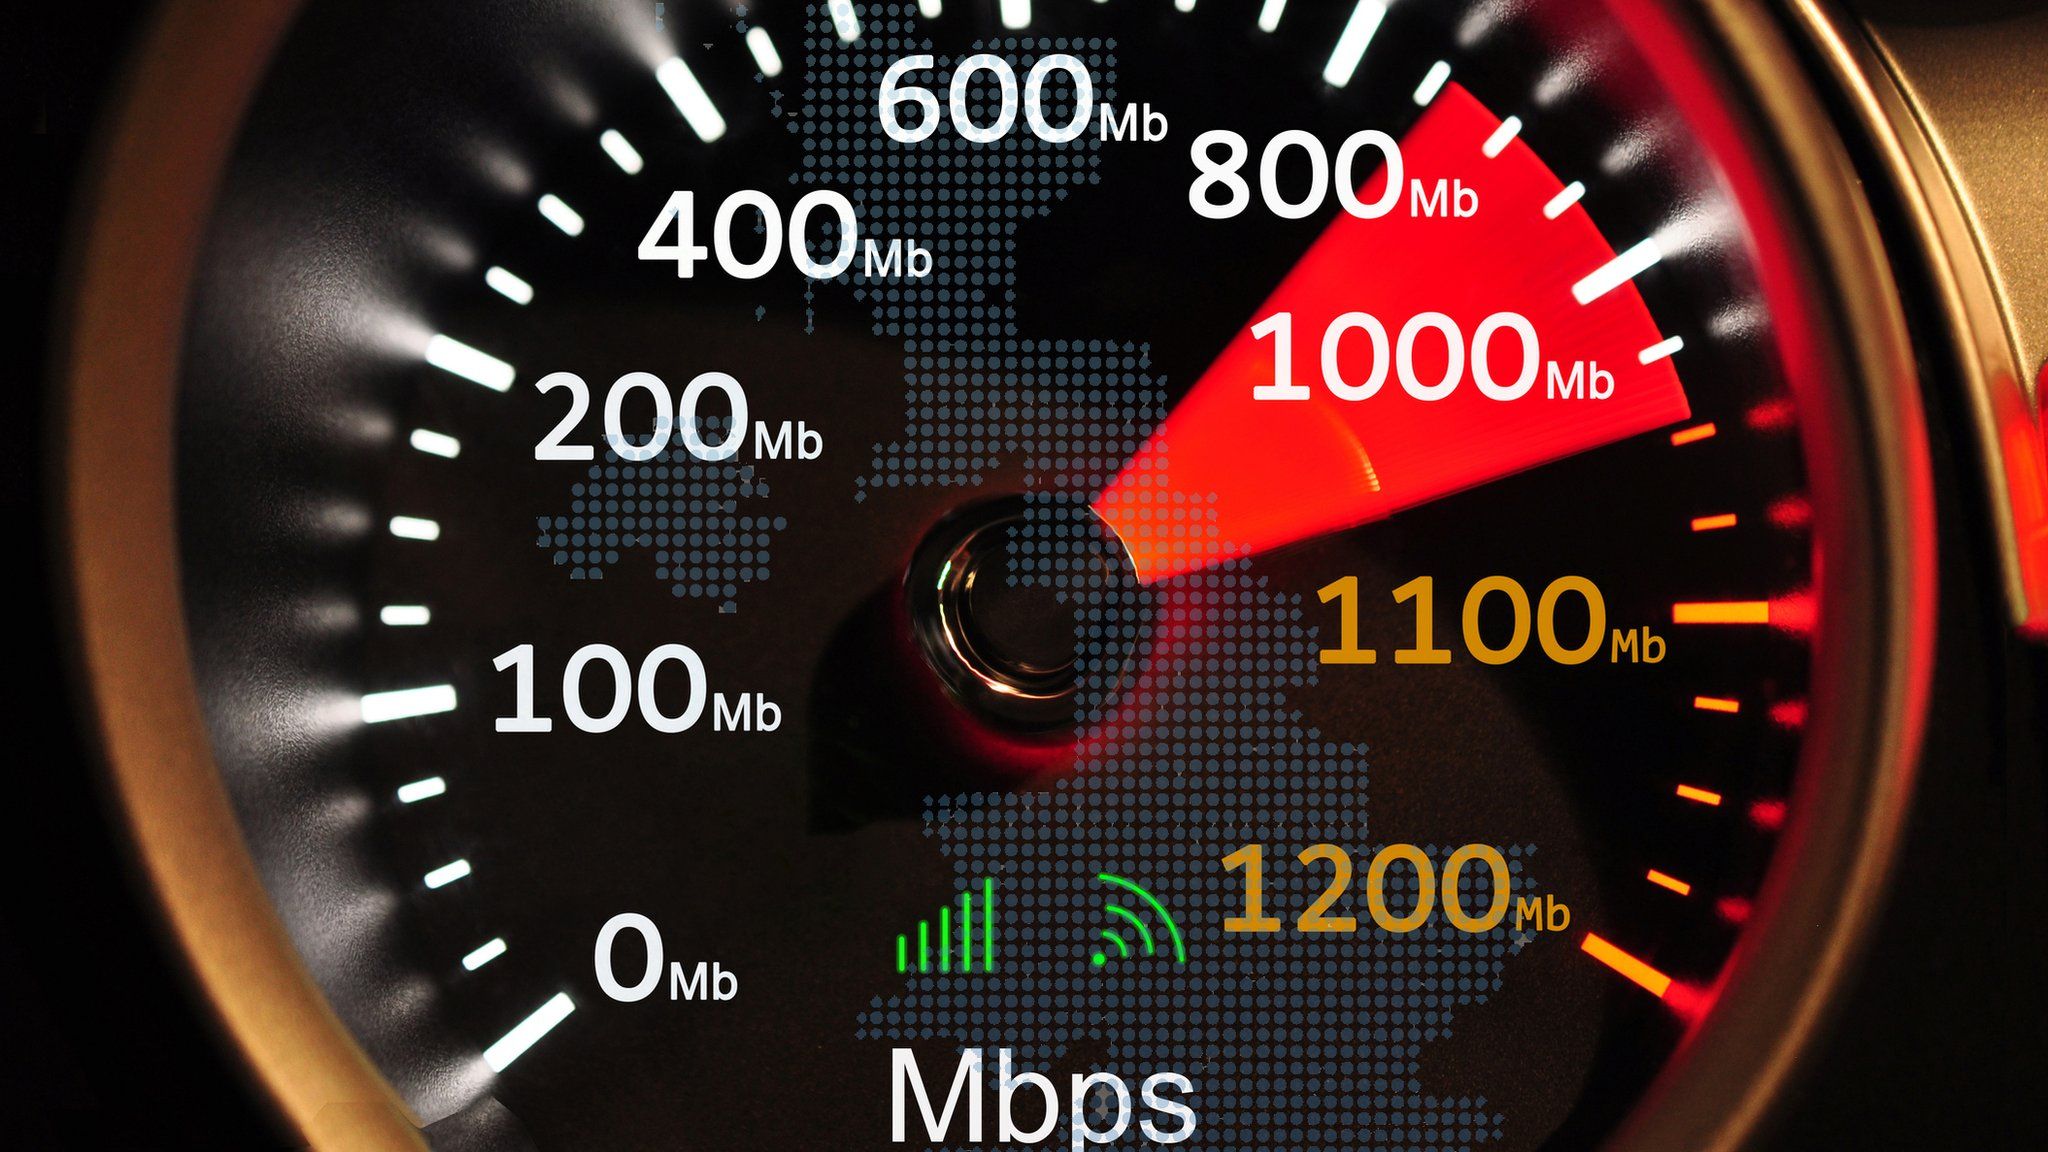 Speed broadband